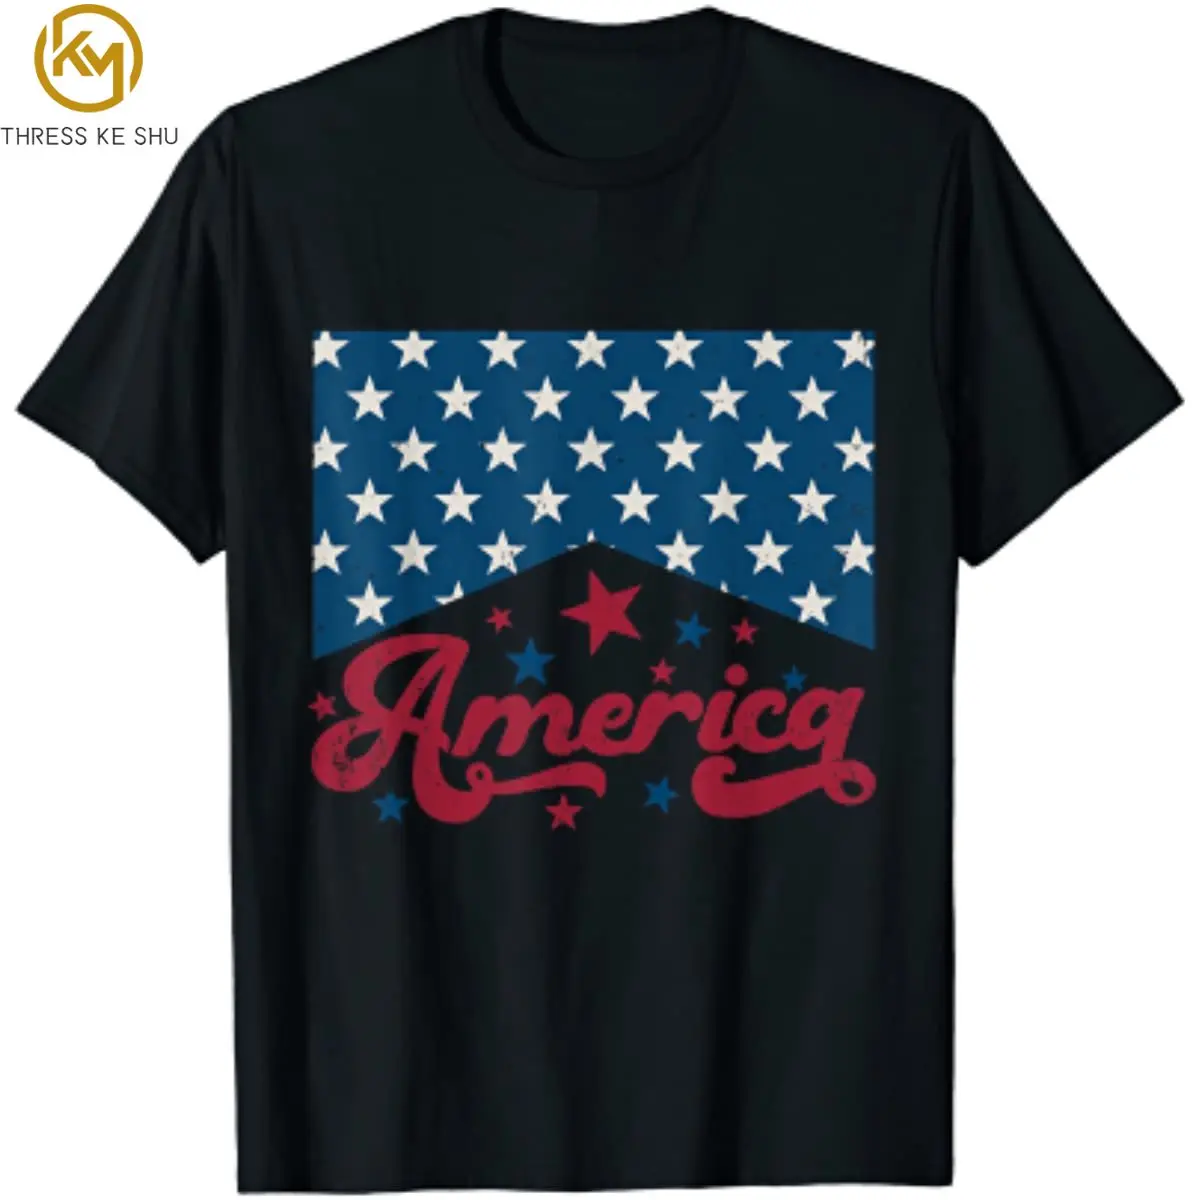 

Повседневная футболка с американским флагом 4 июля, хлопковая рубашка с надписью «Proud» на День памяти, для повседневной носки, для всех сезонов